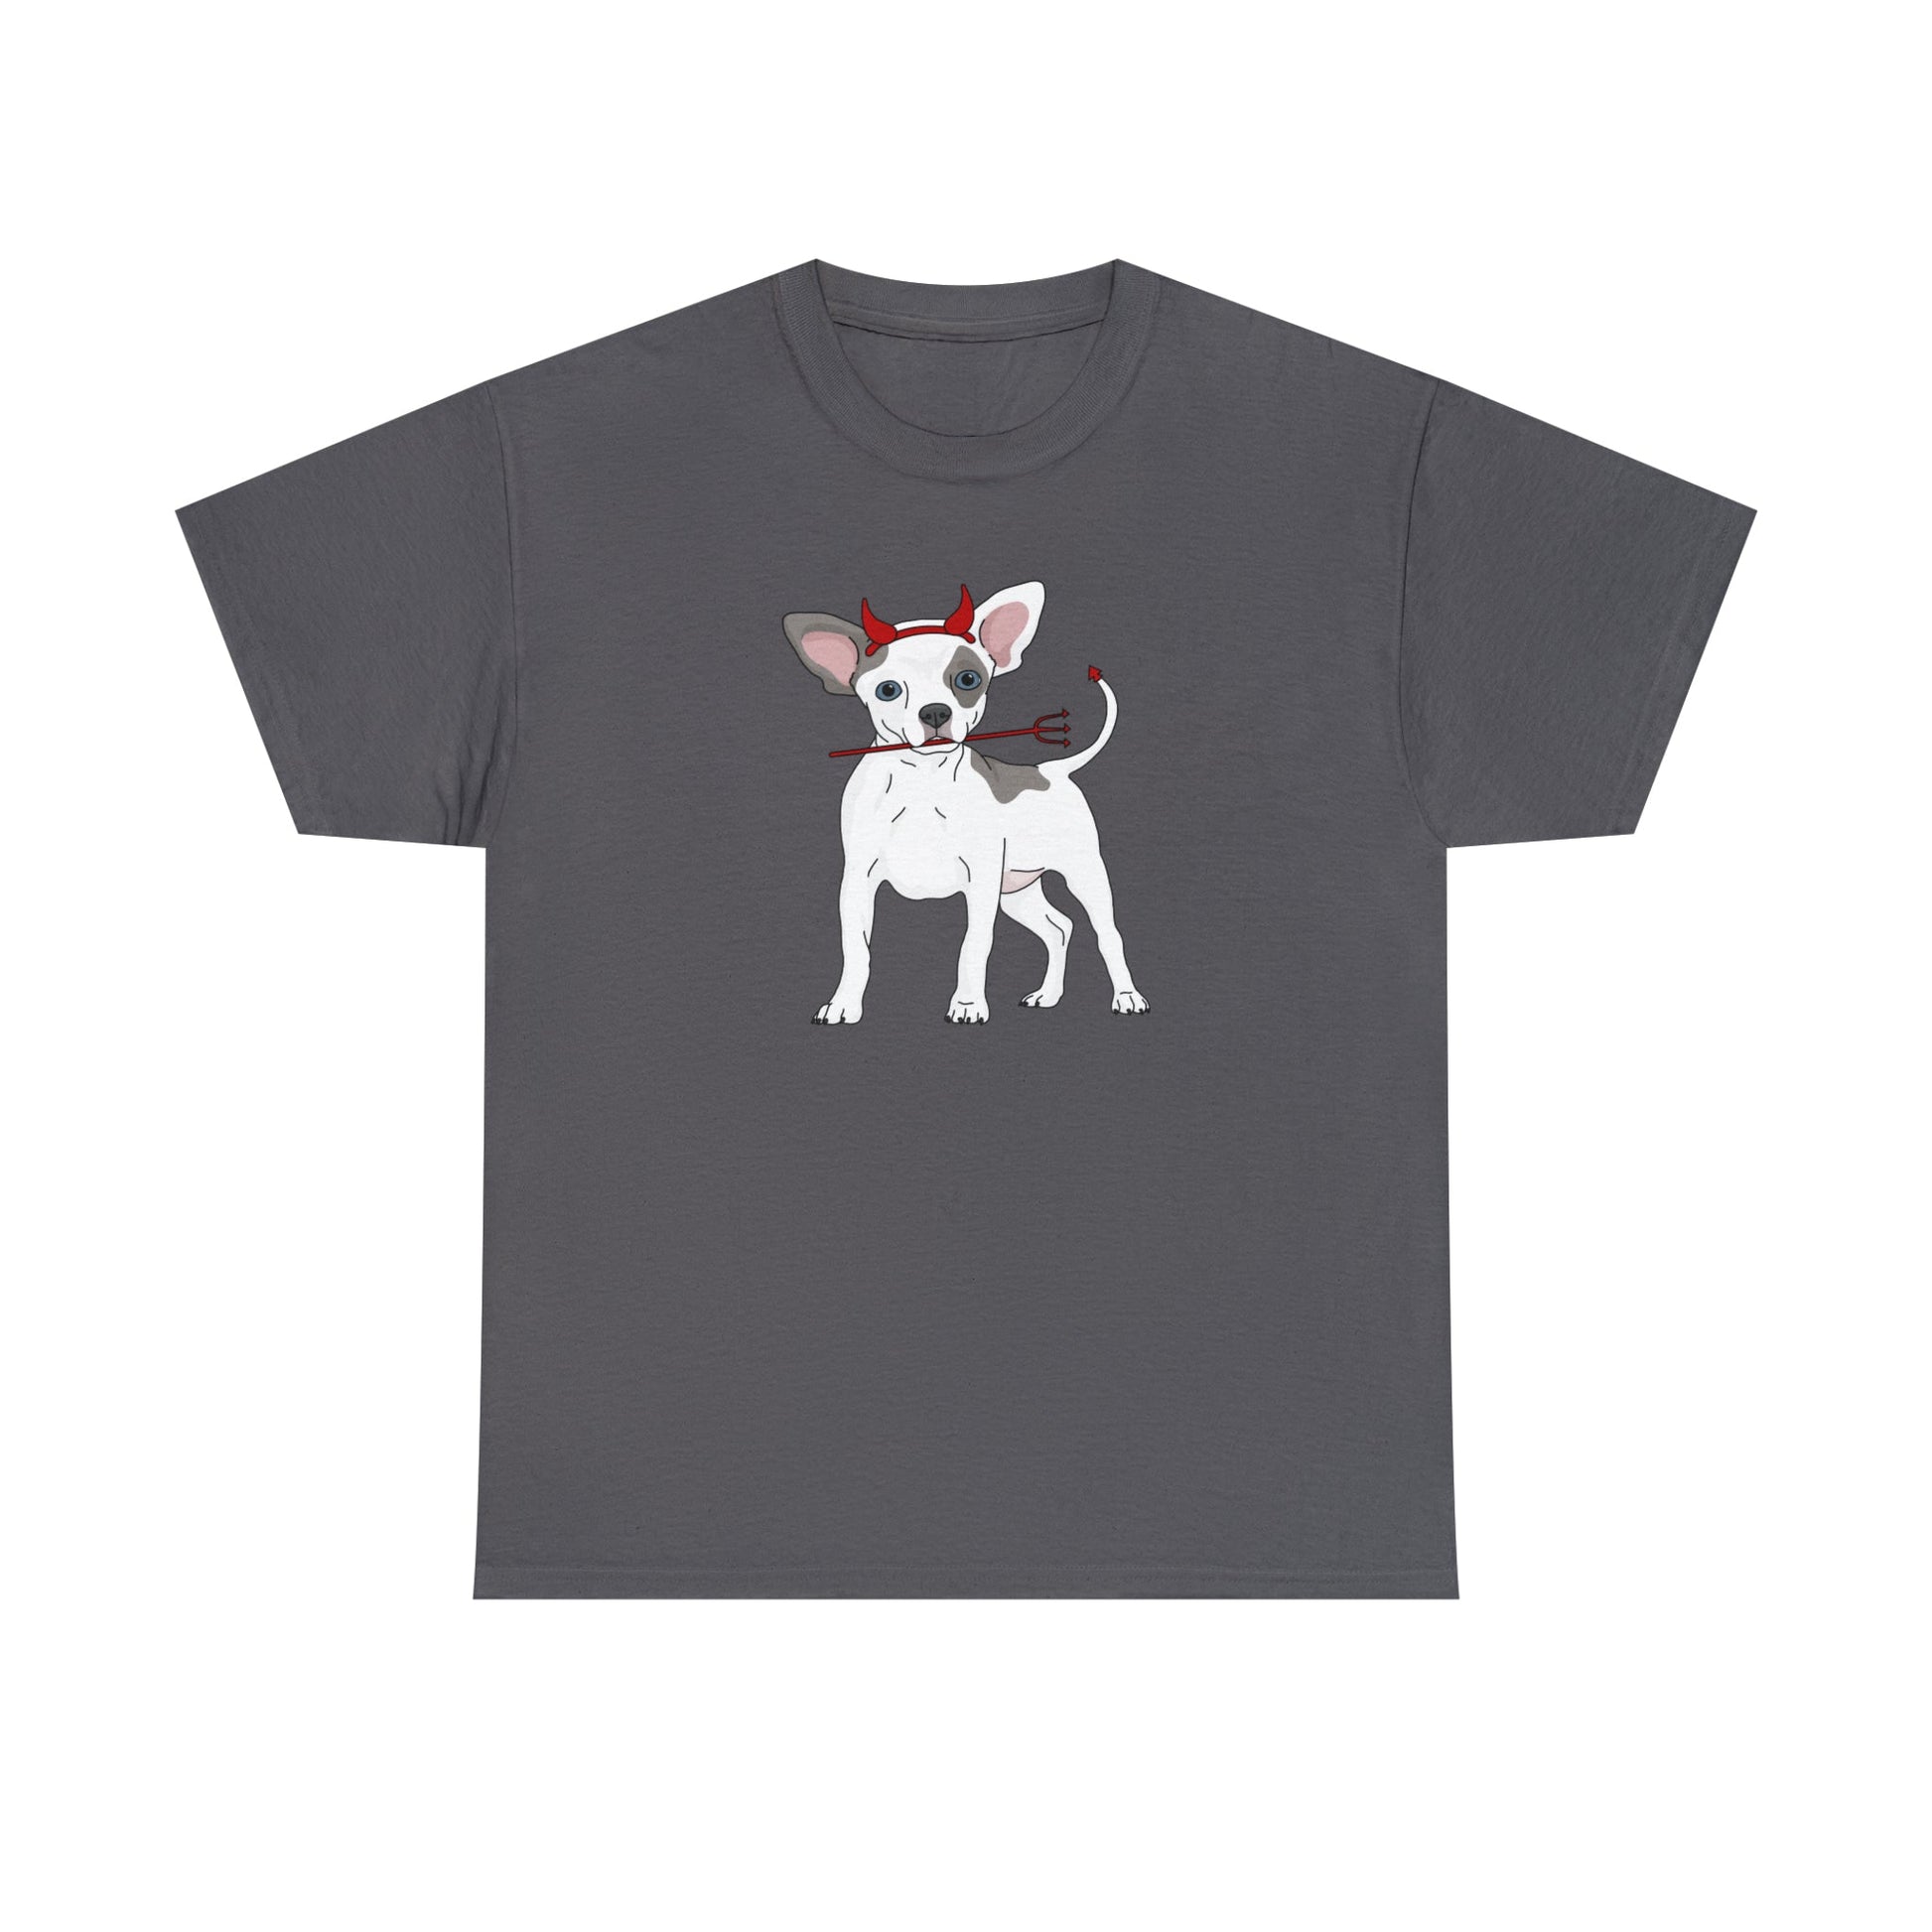 Devil Puppy | T-shirt - Detezi Designs-62006322712955520549